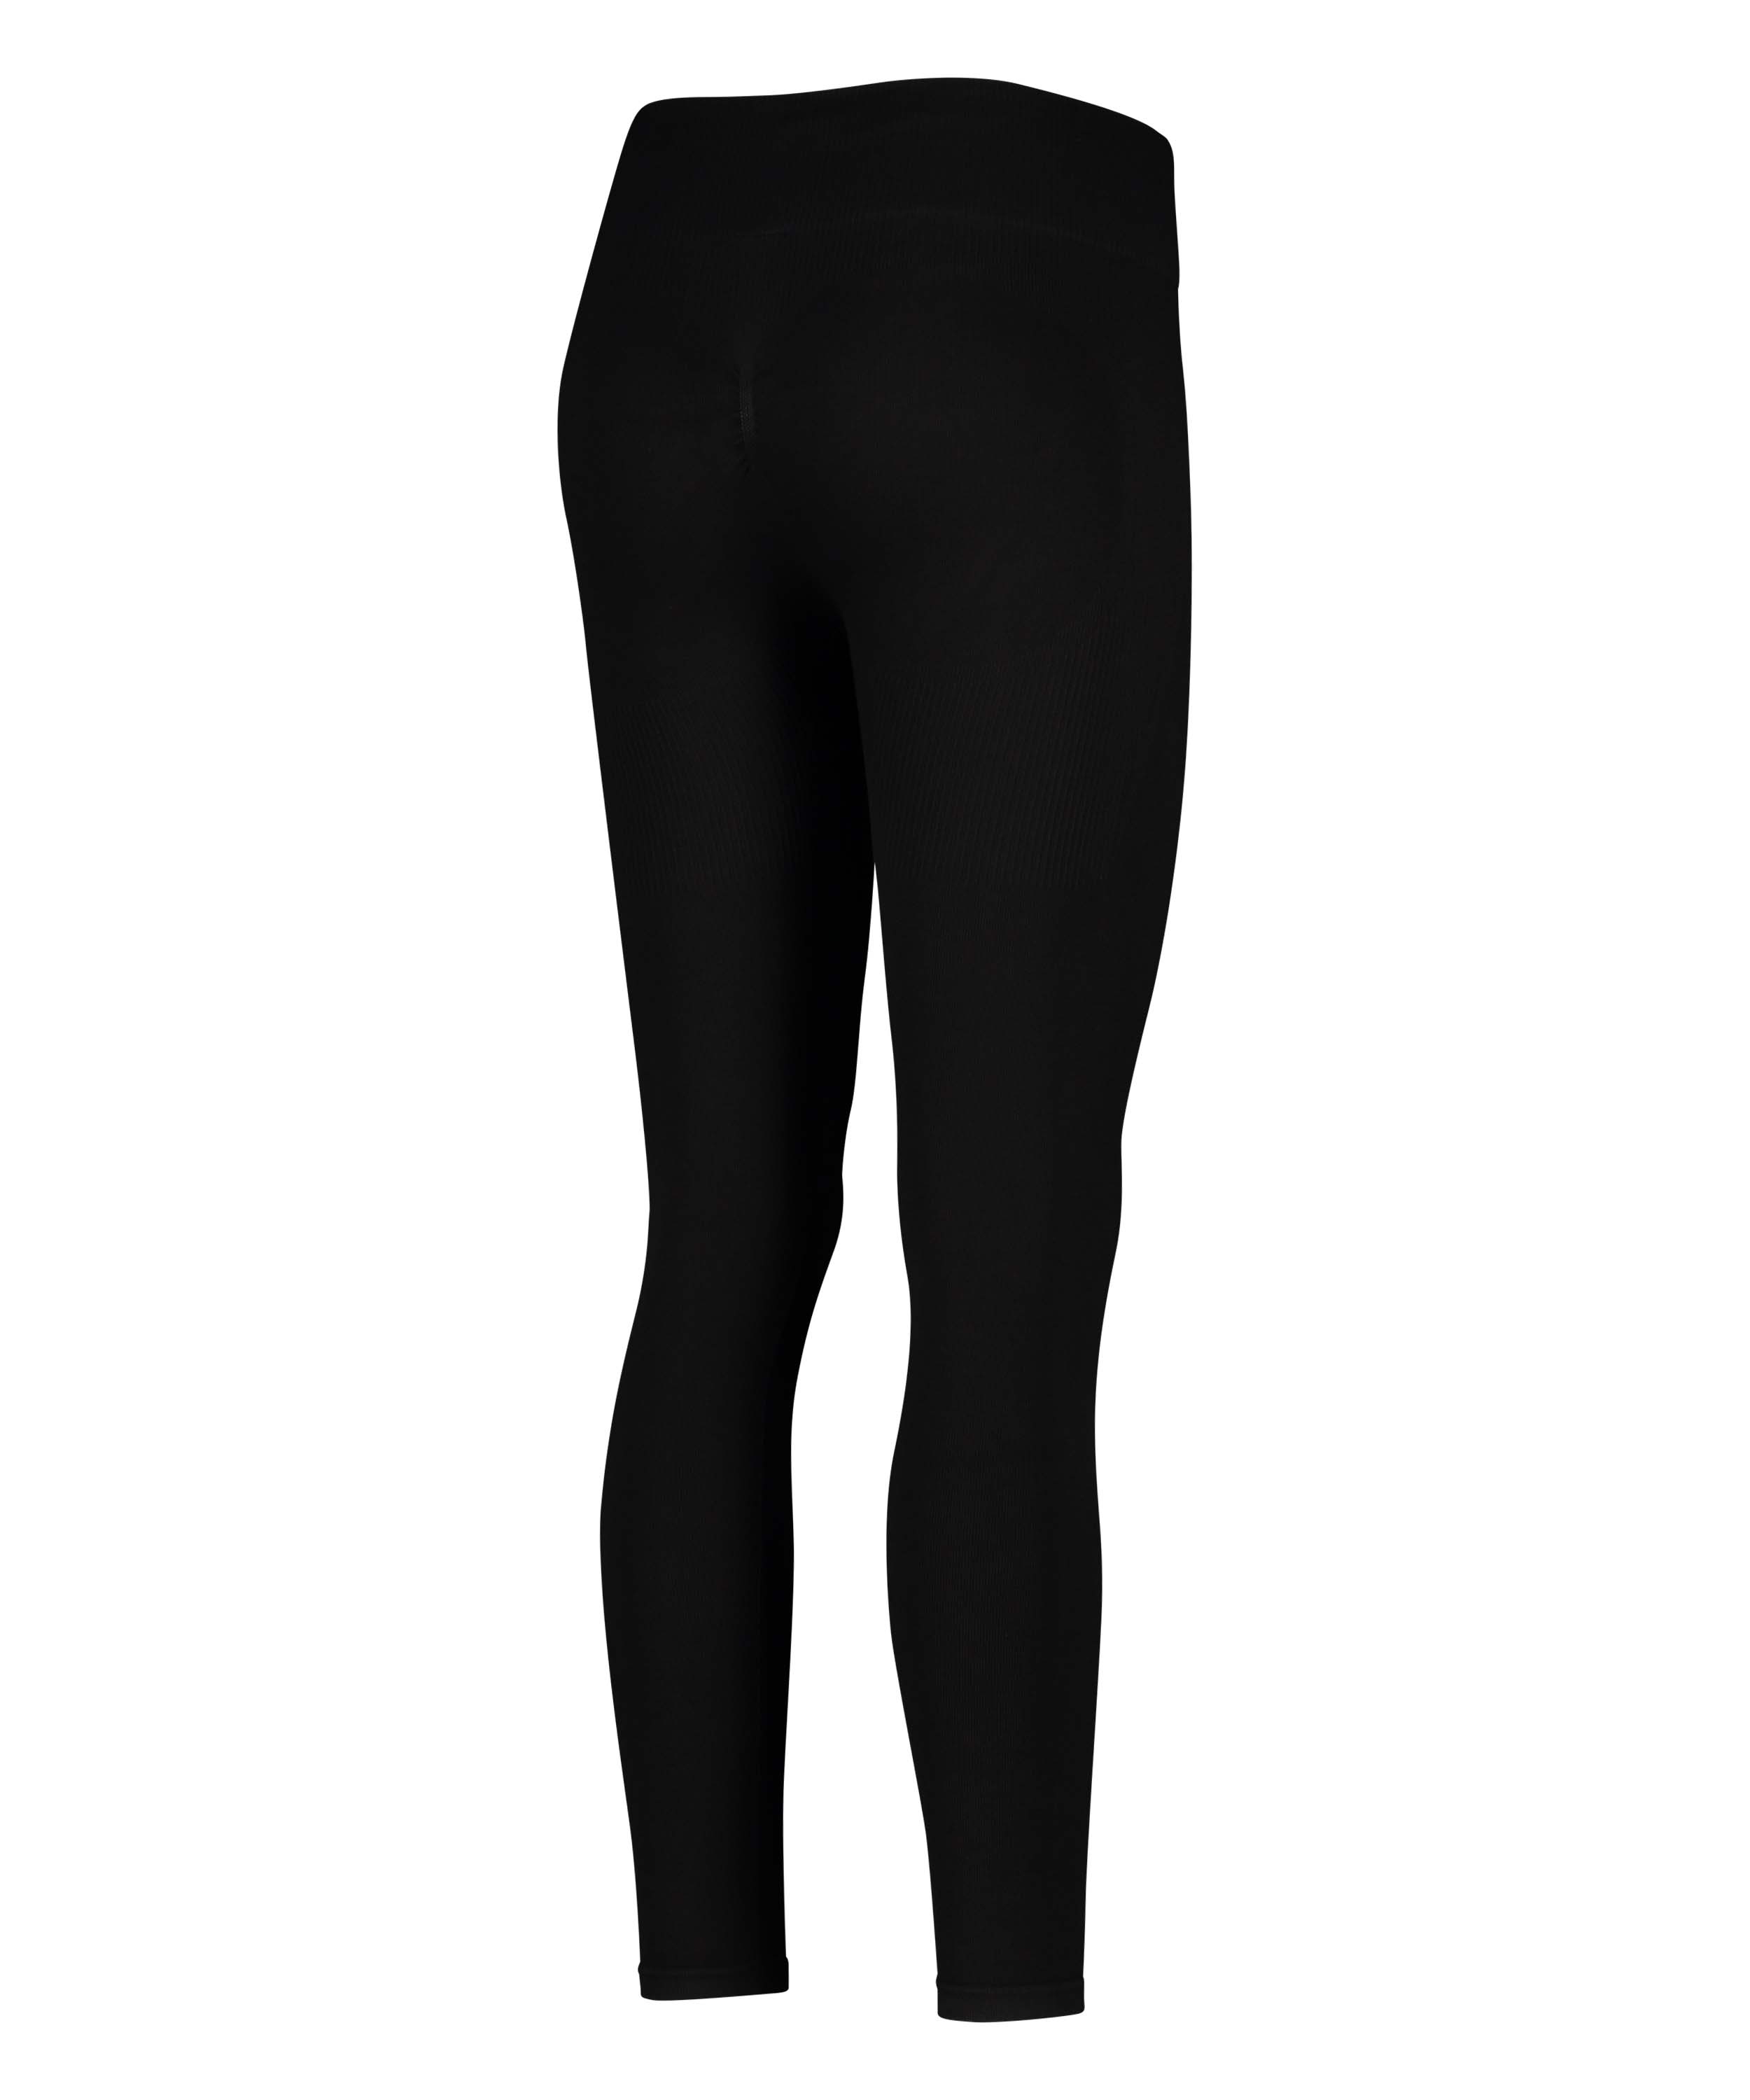 HKMX High waisted seamless sport legging, Black, main